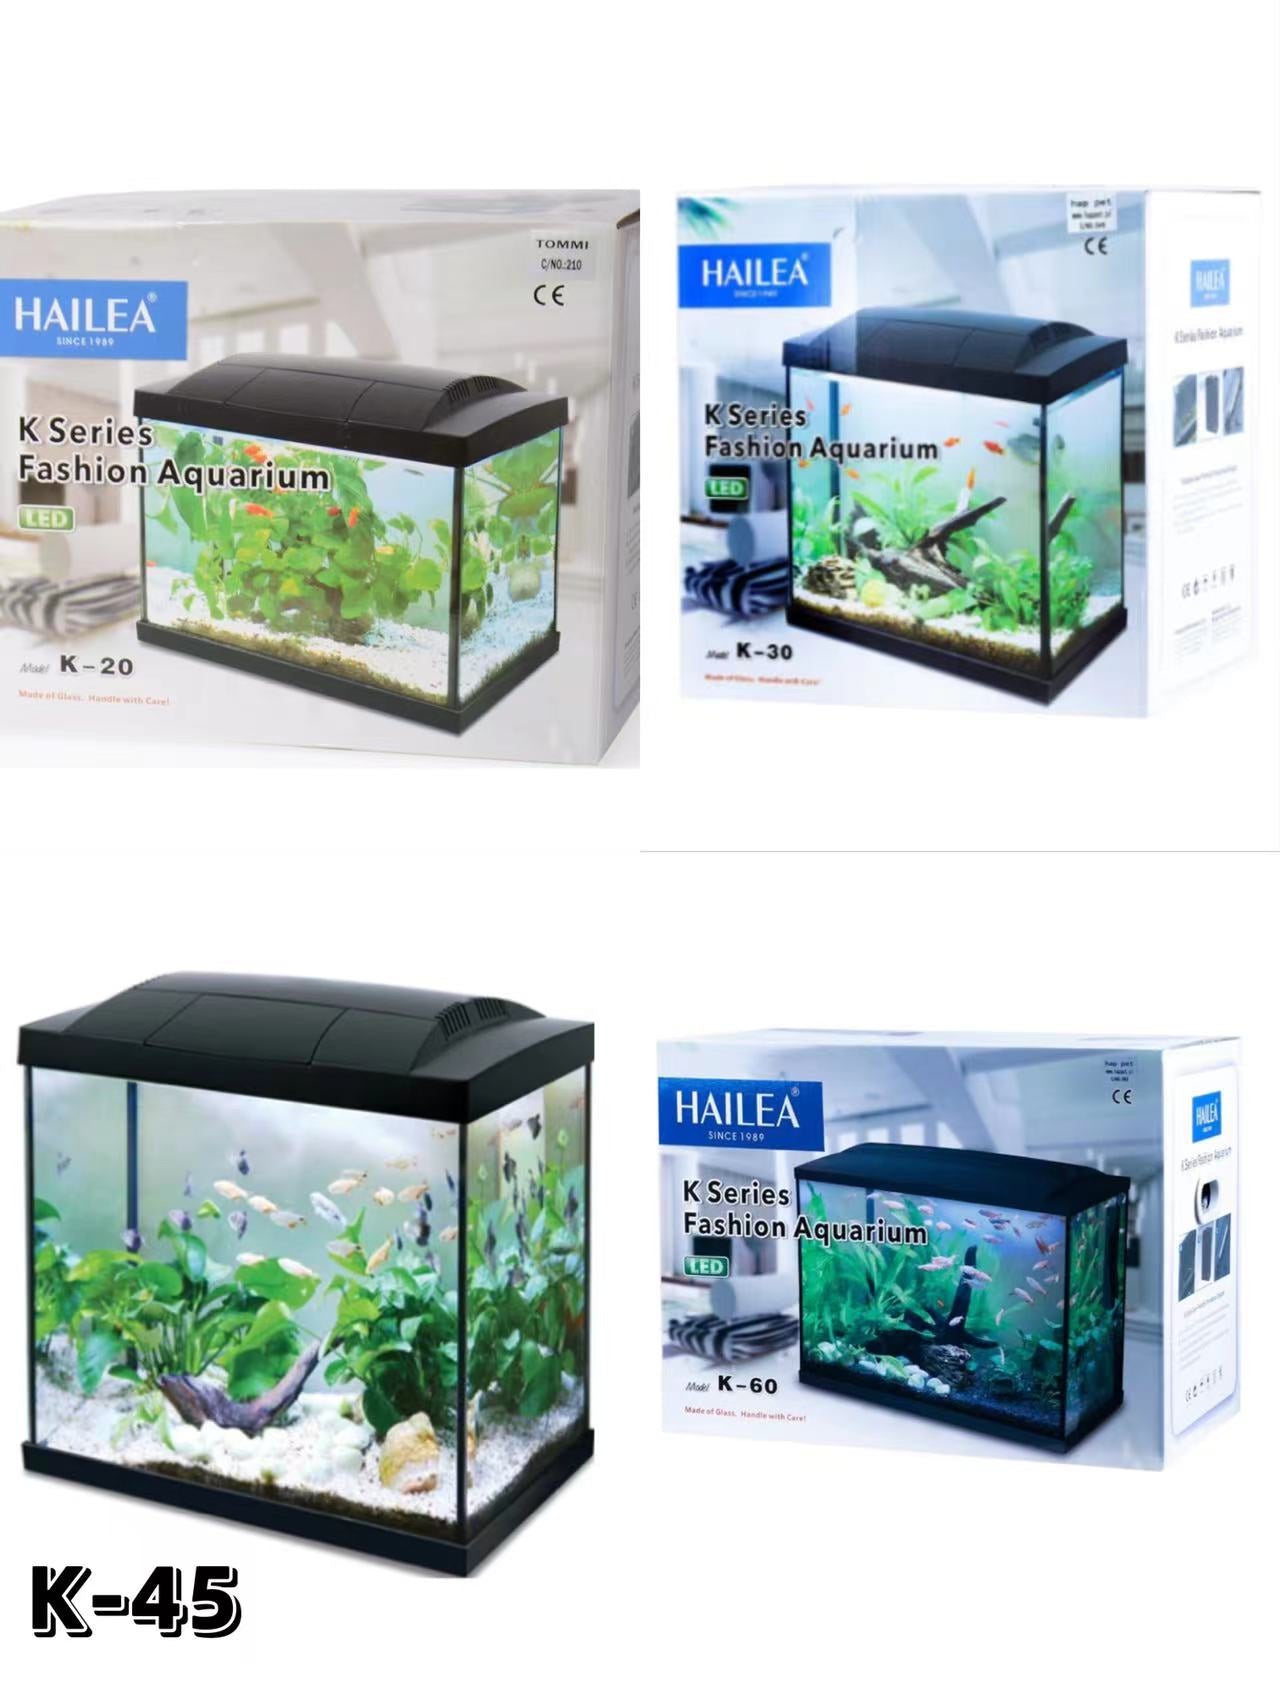 Aquarium and tanks